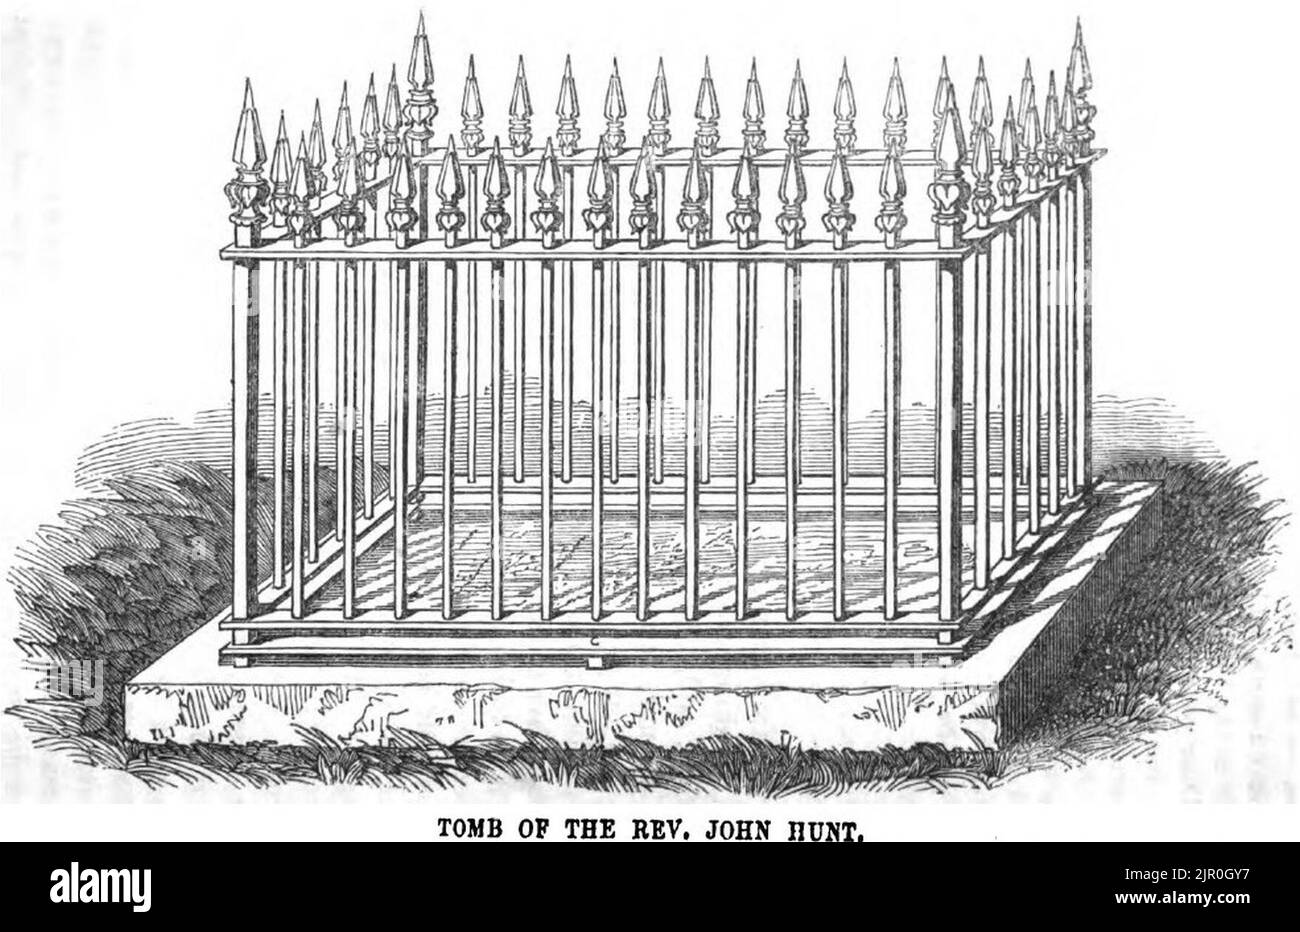 Tomb of Rev. John Hunt, Vewa, Feejee (VII, p.66, June 1950) - Copy Stock Photo